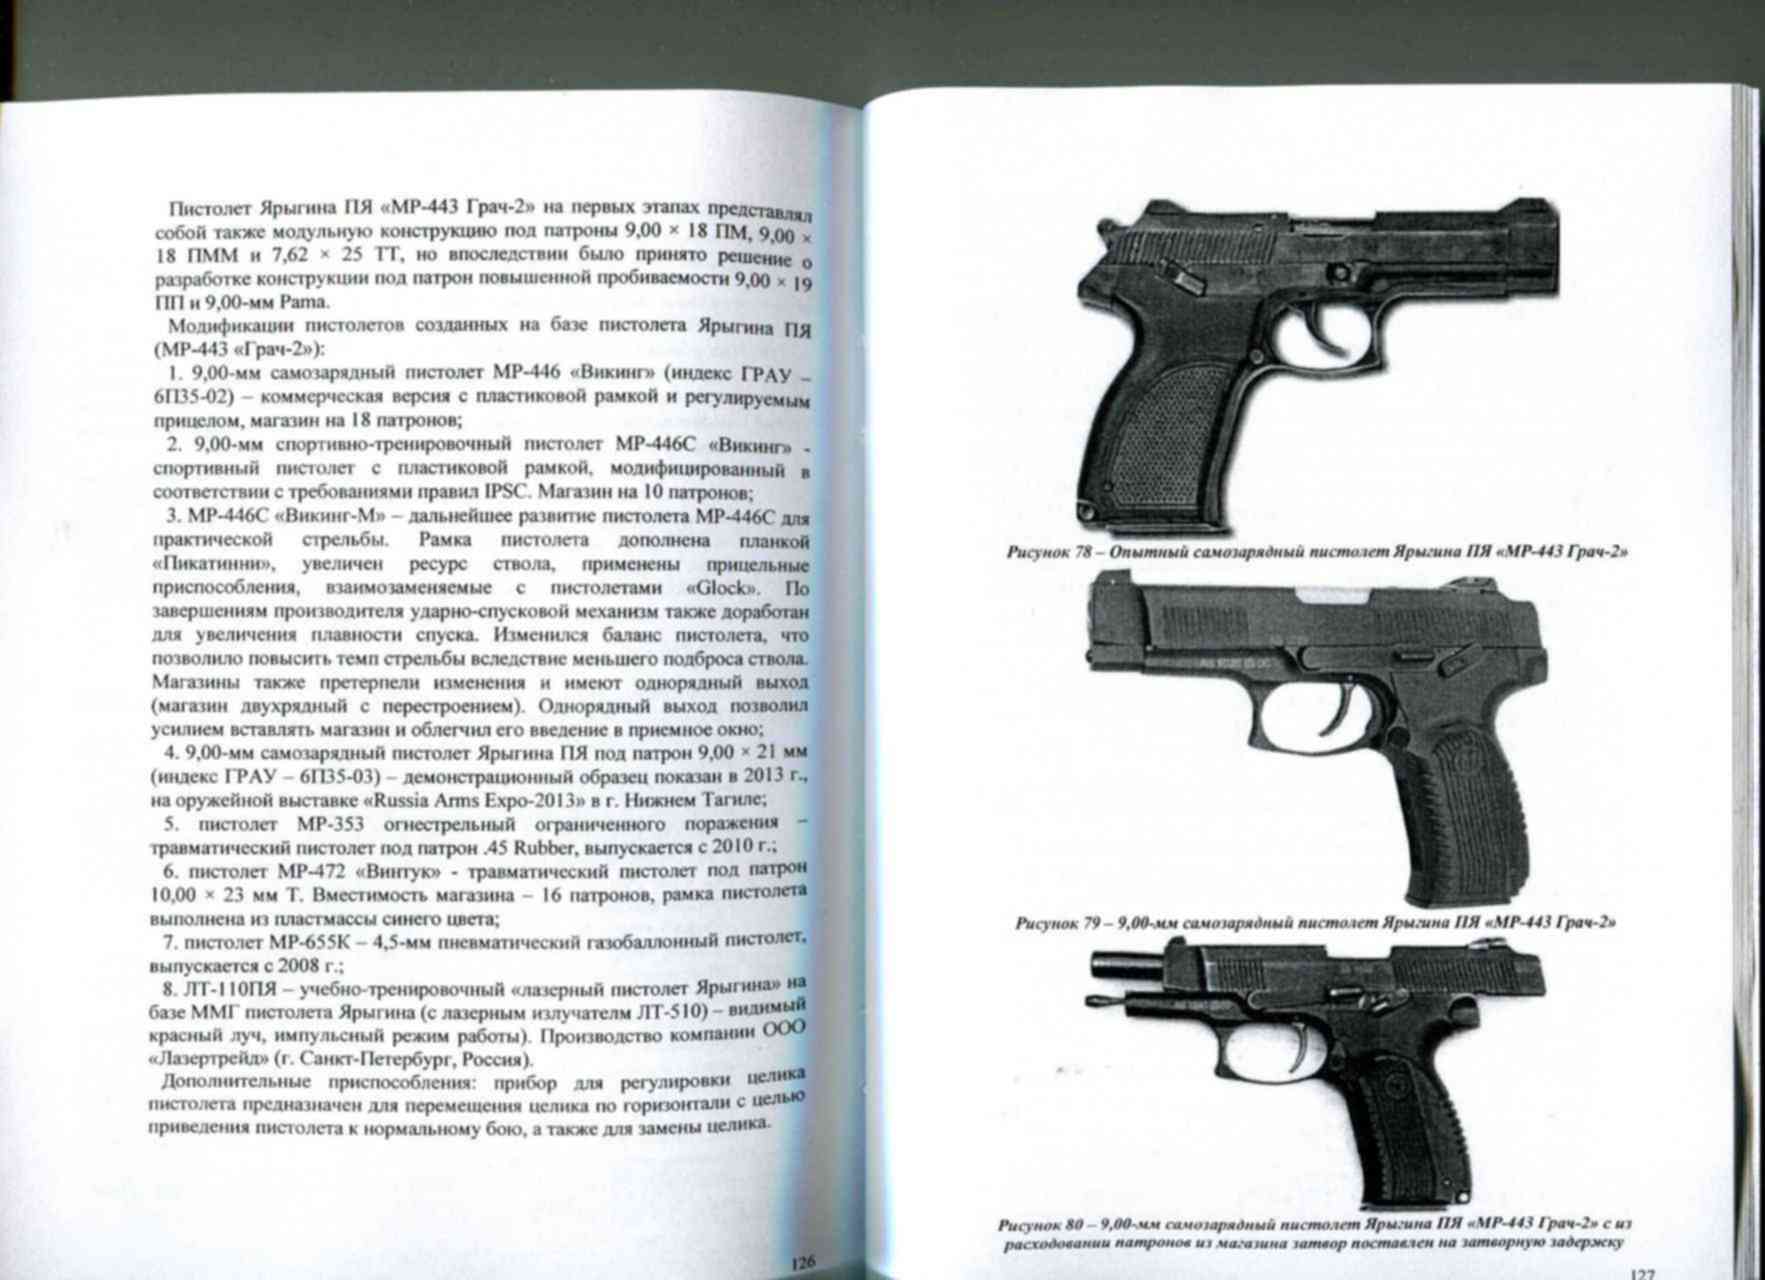 Читать полностью книги николая ярыгина. ТТХ пистолета Ярыгина 9 мм.